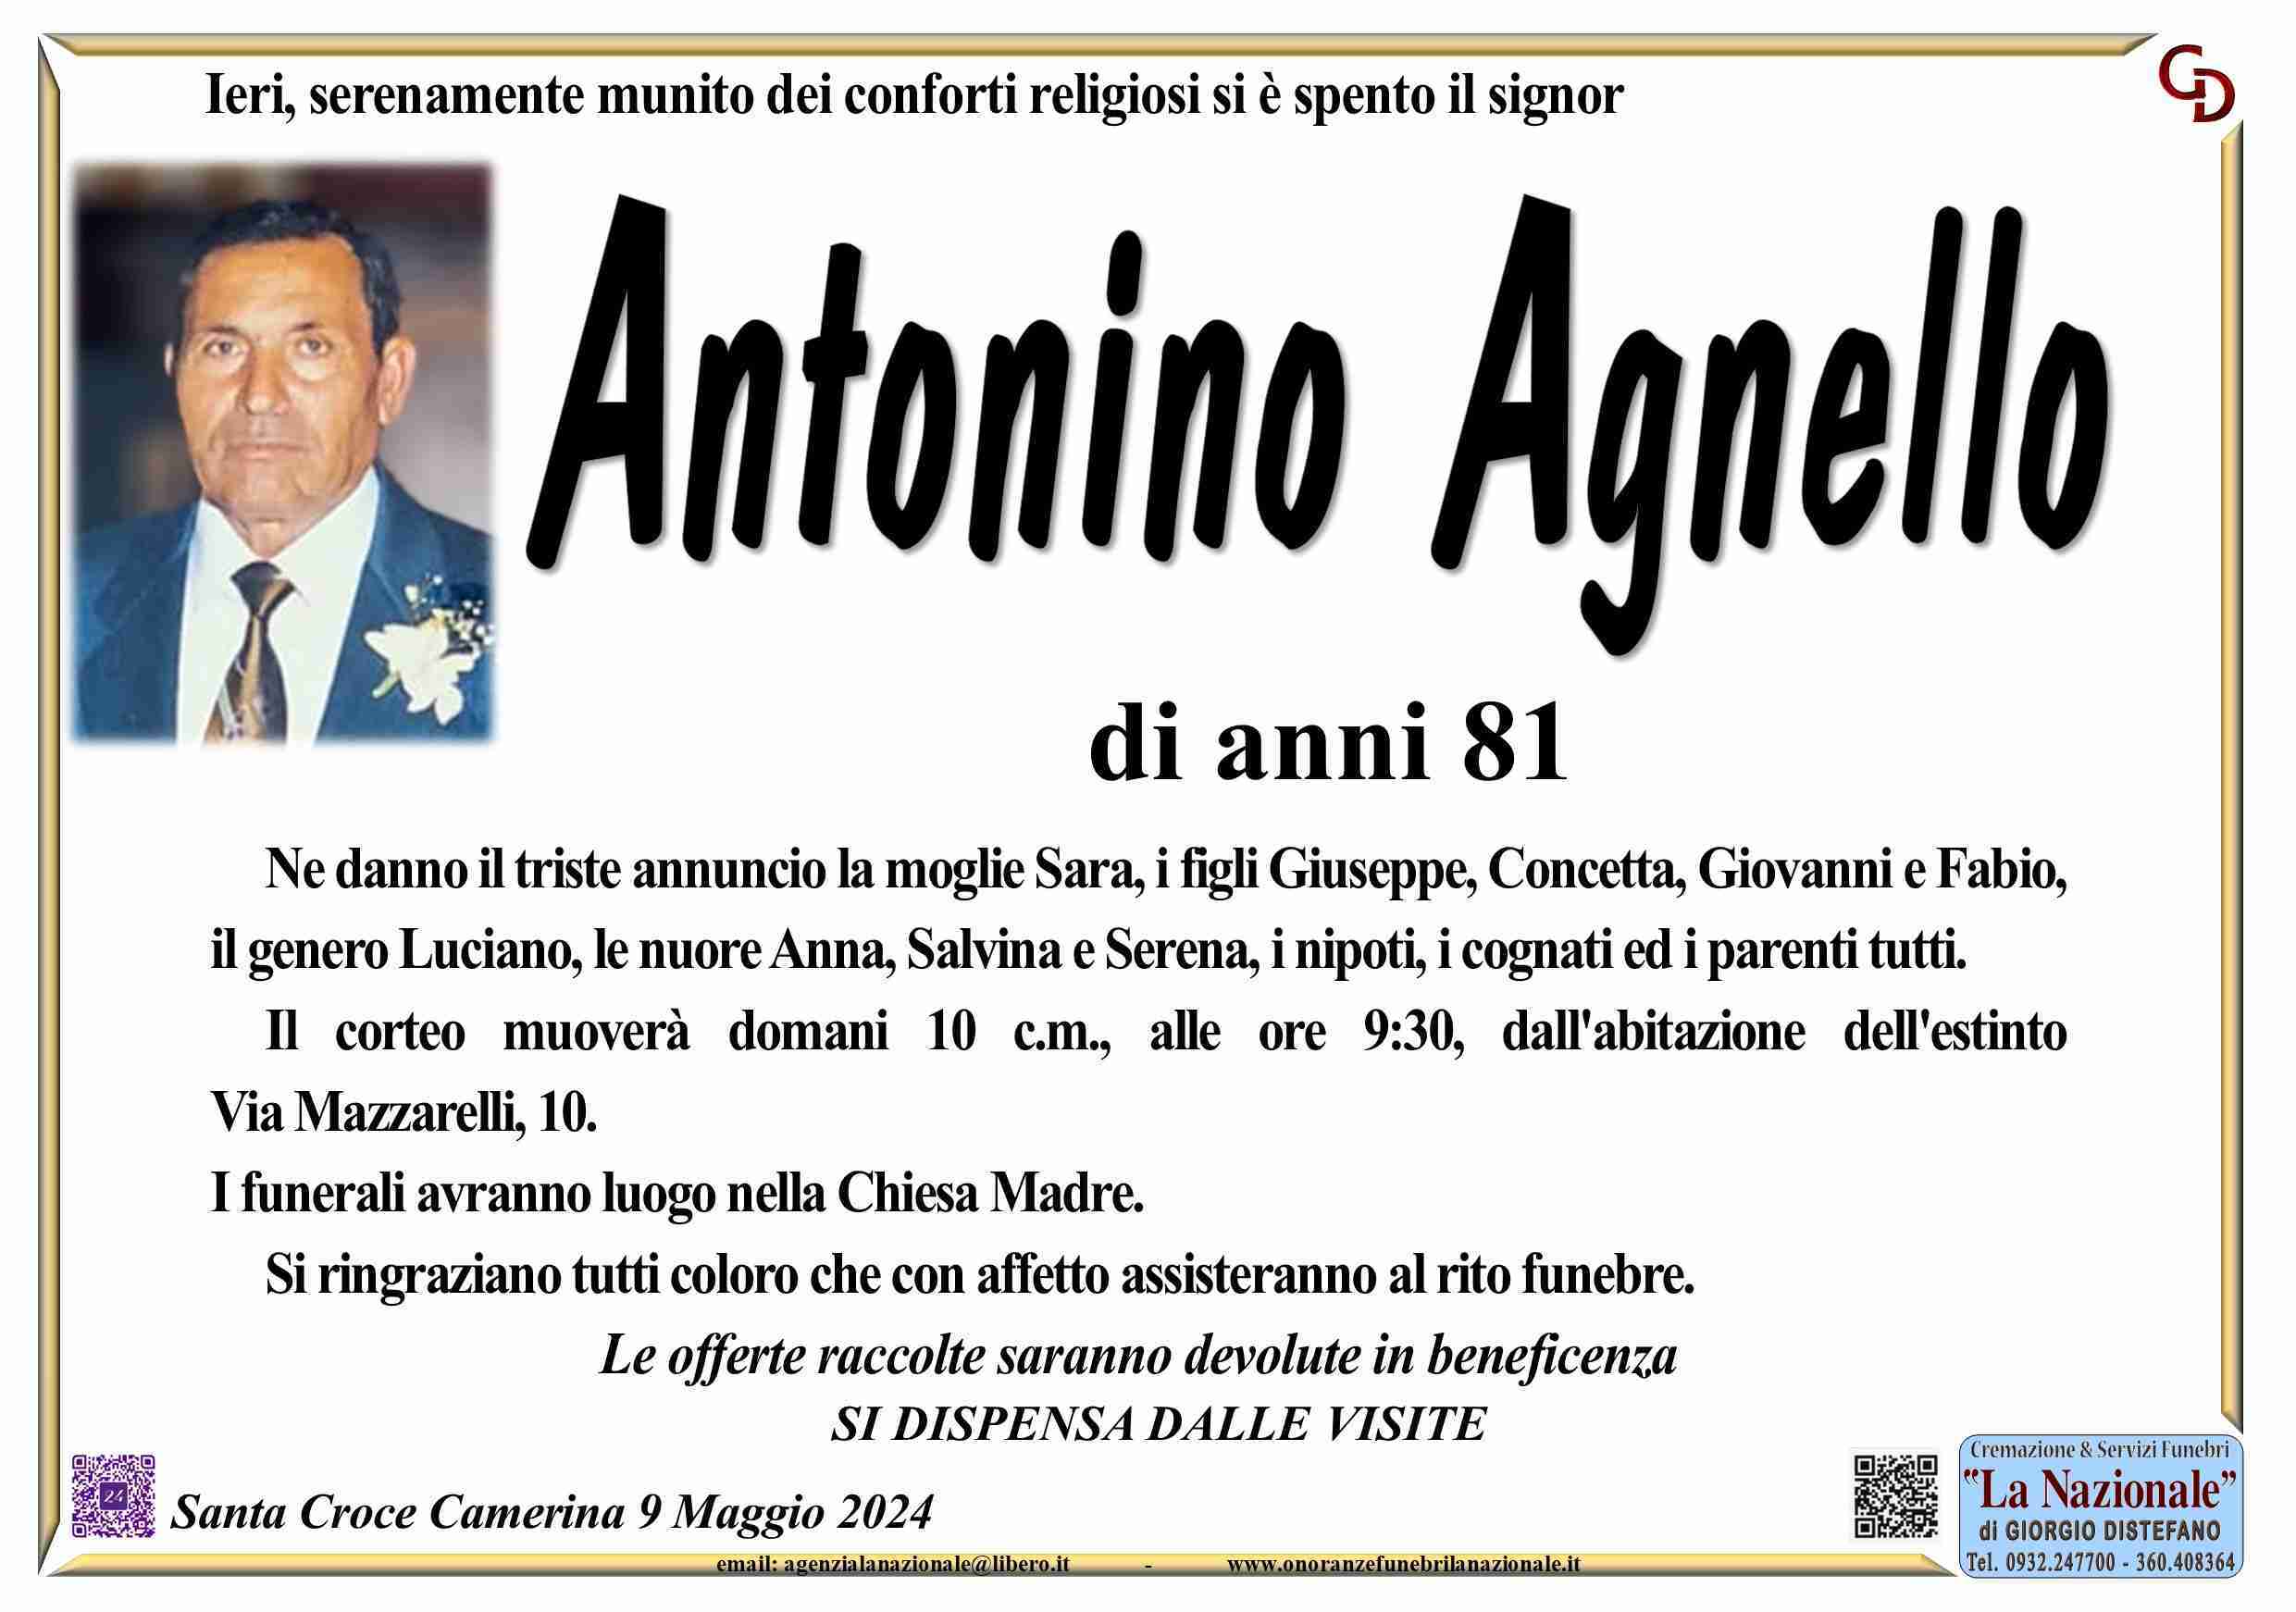 Antonino Agnello